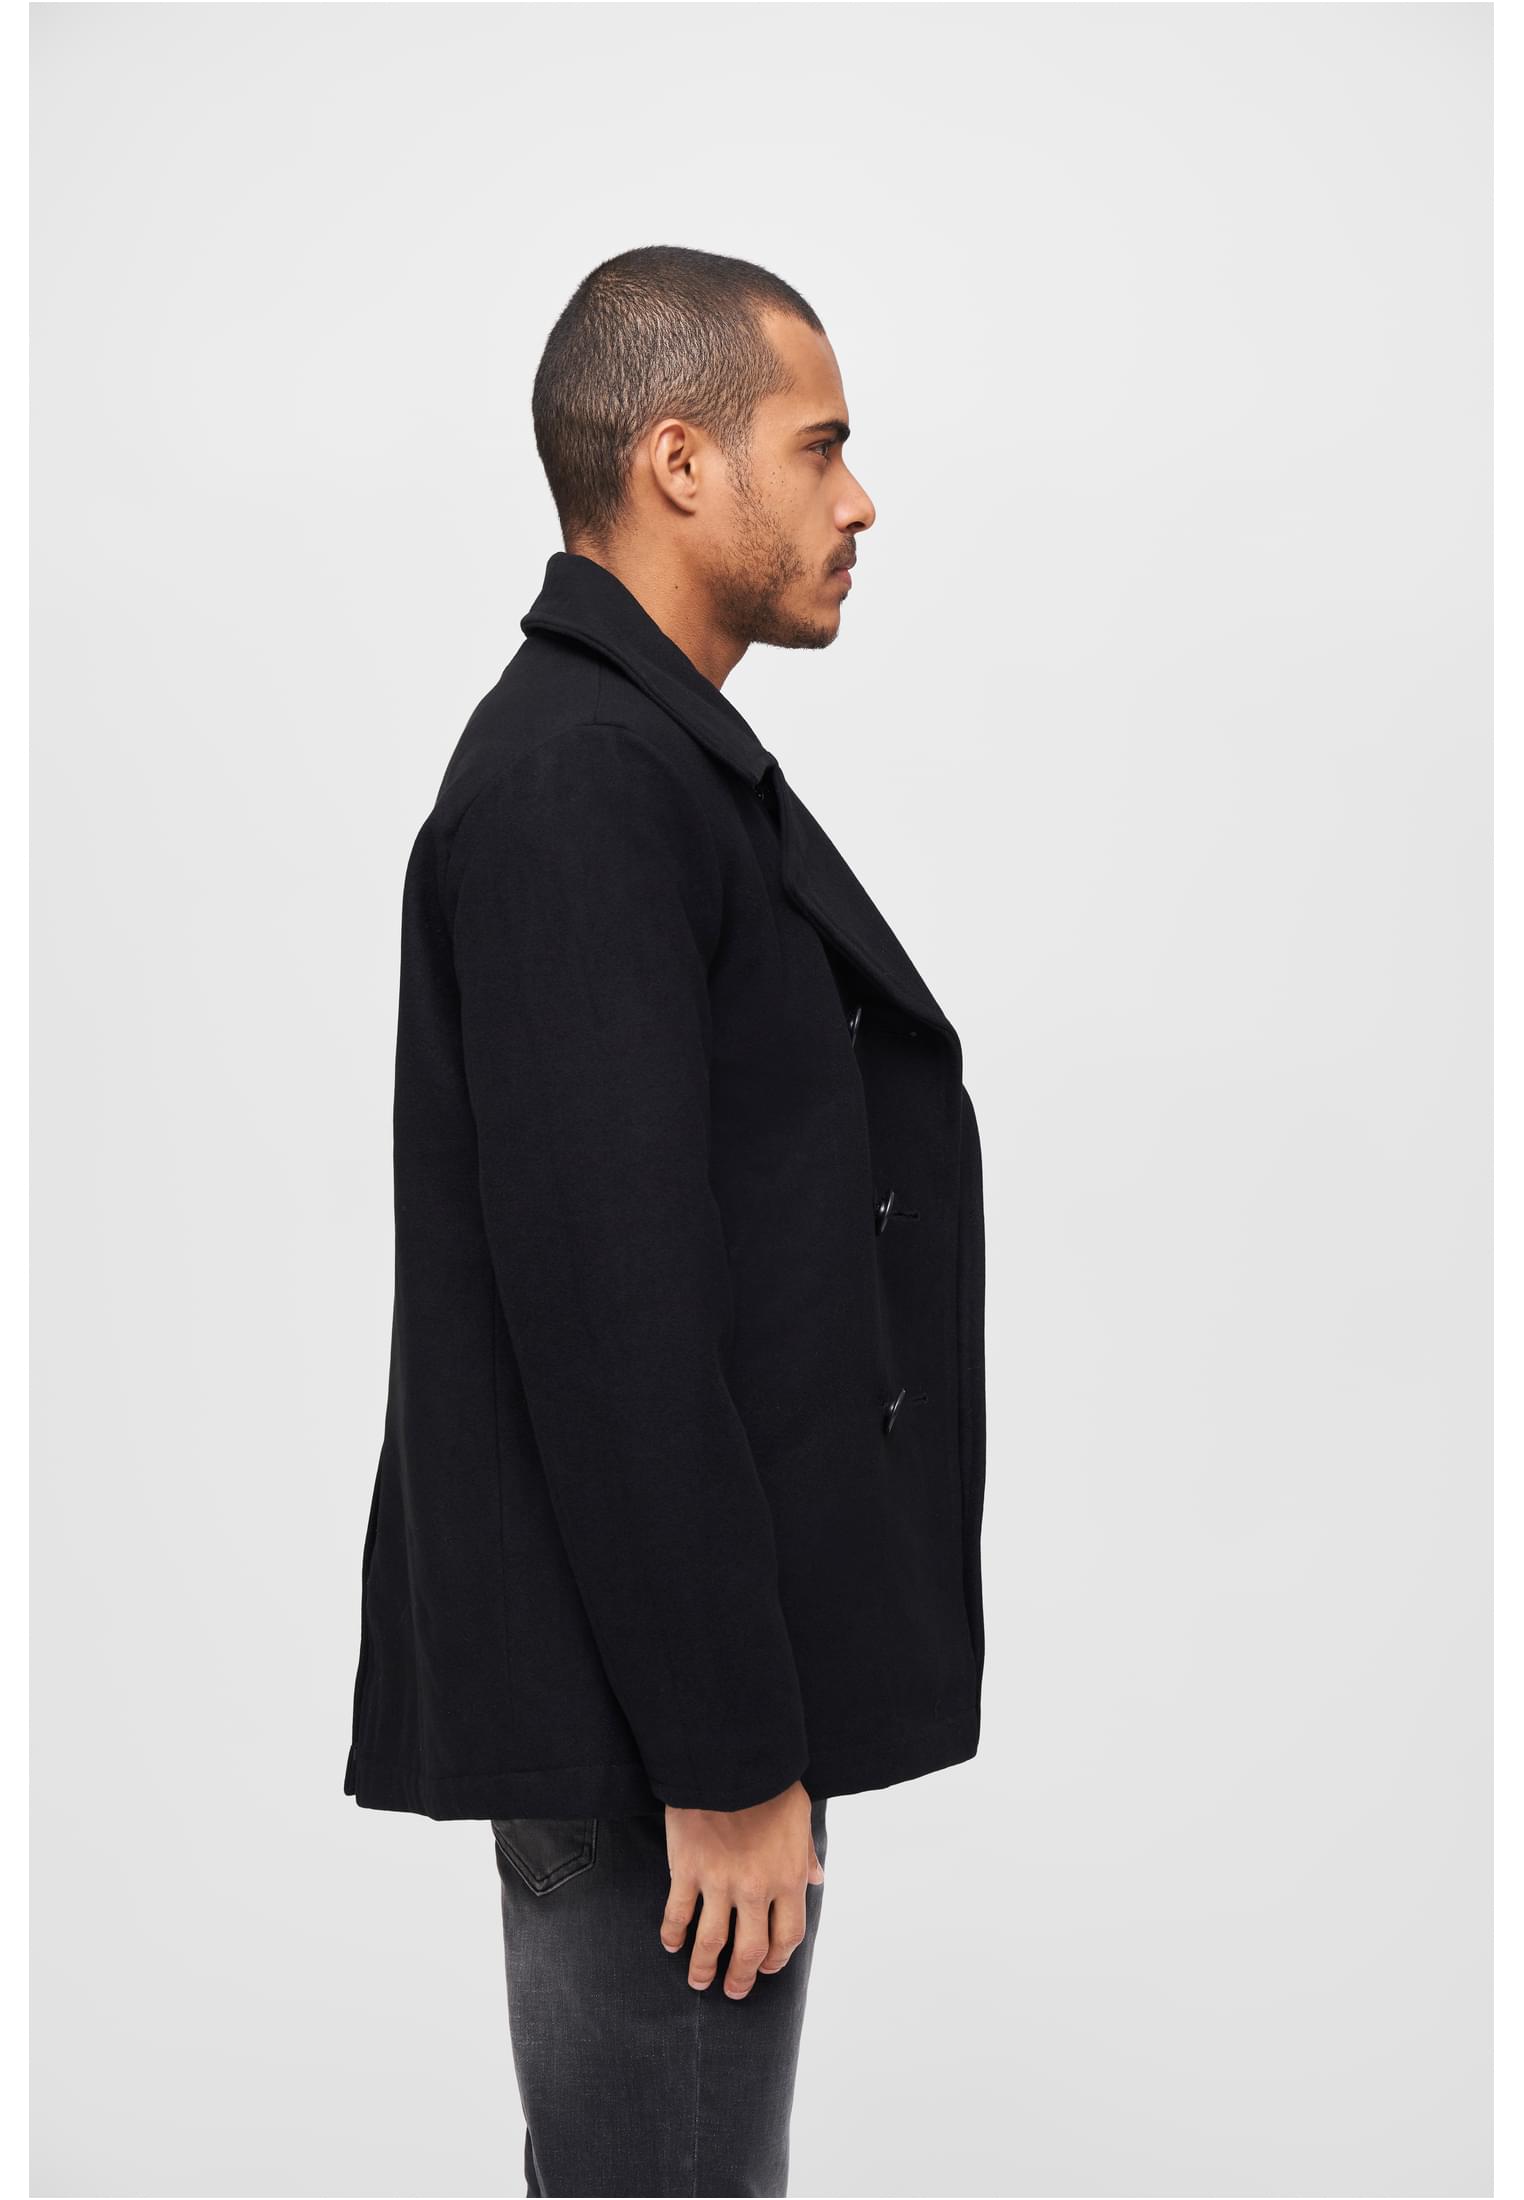 Jacken Pea Coat in Farbe black